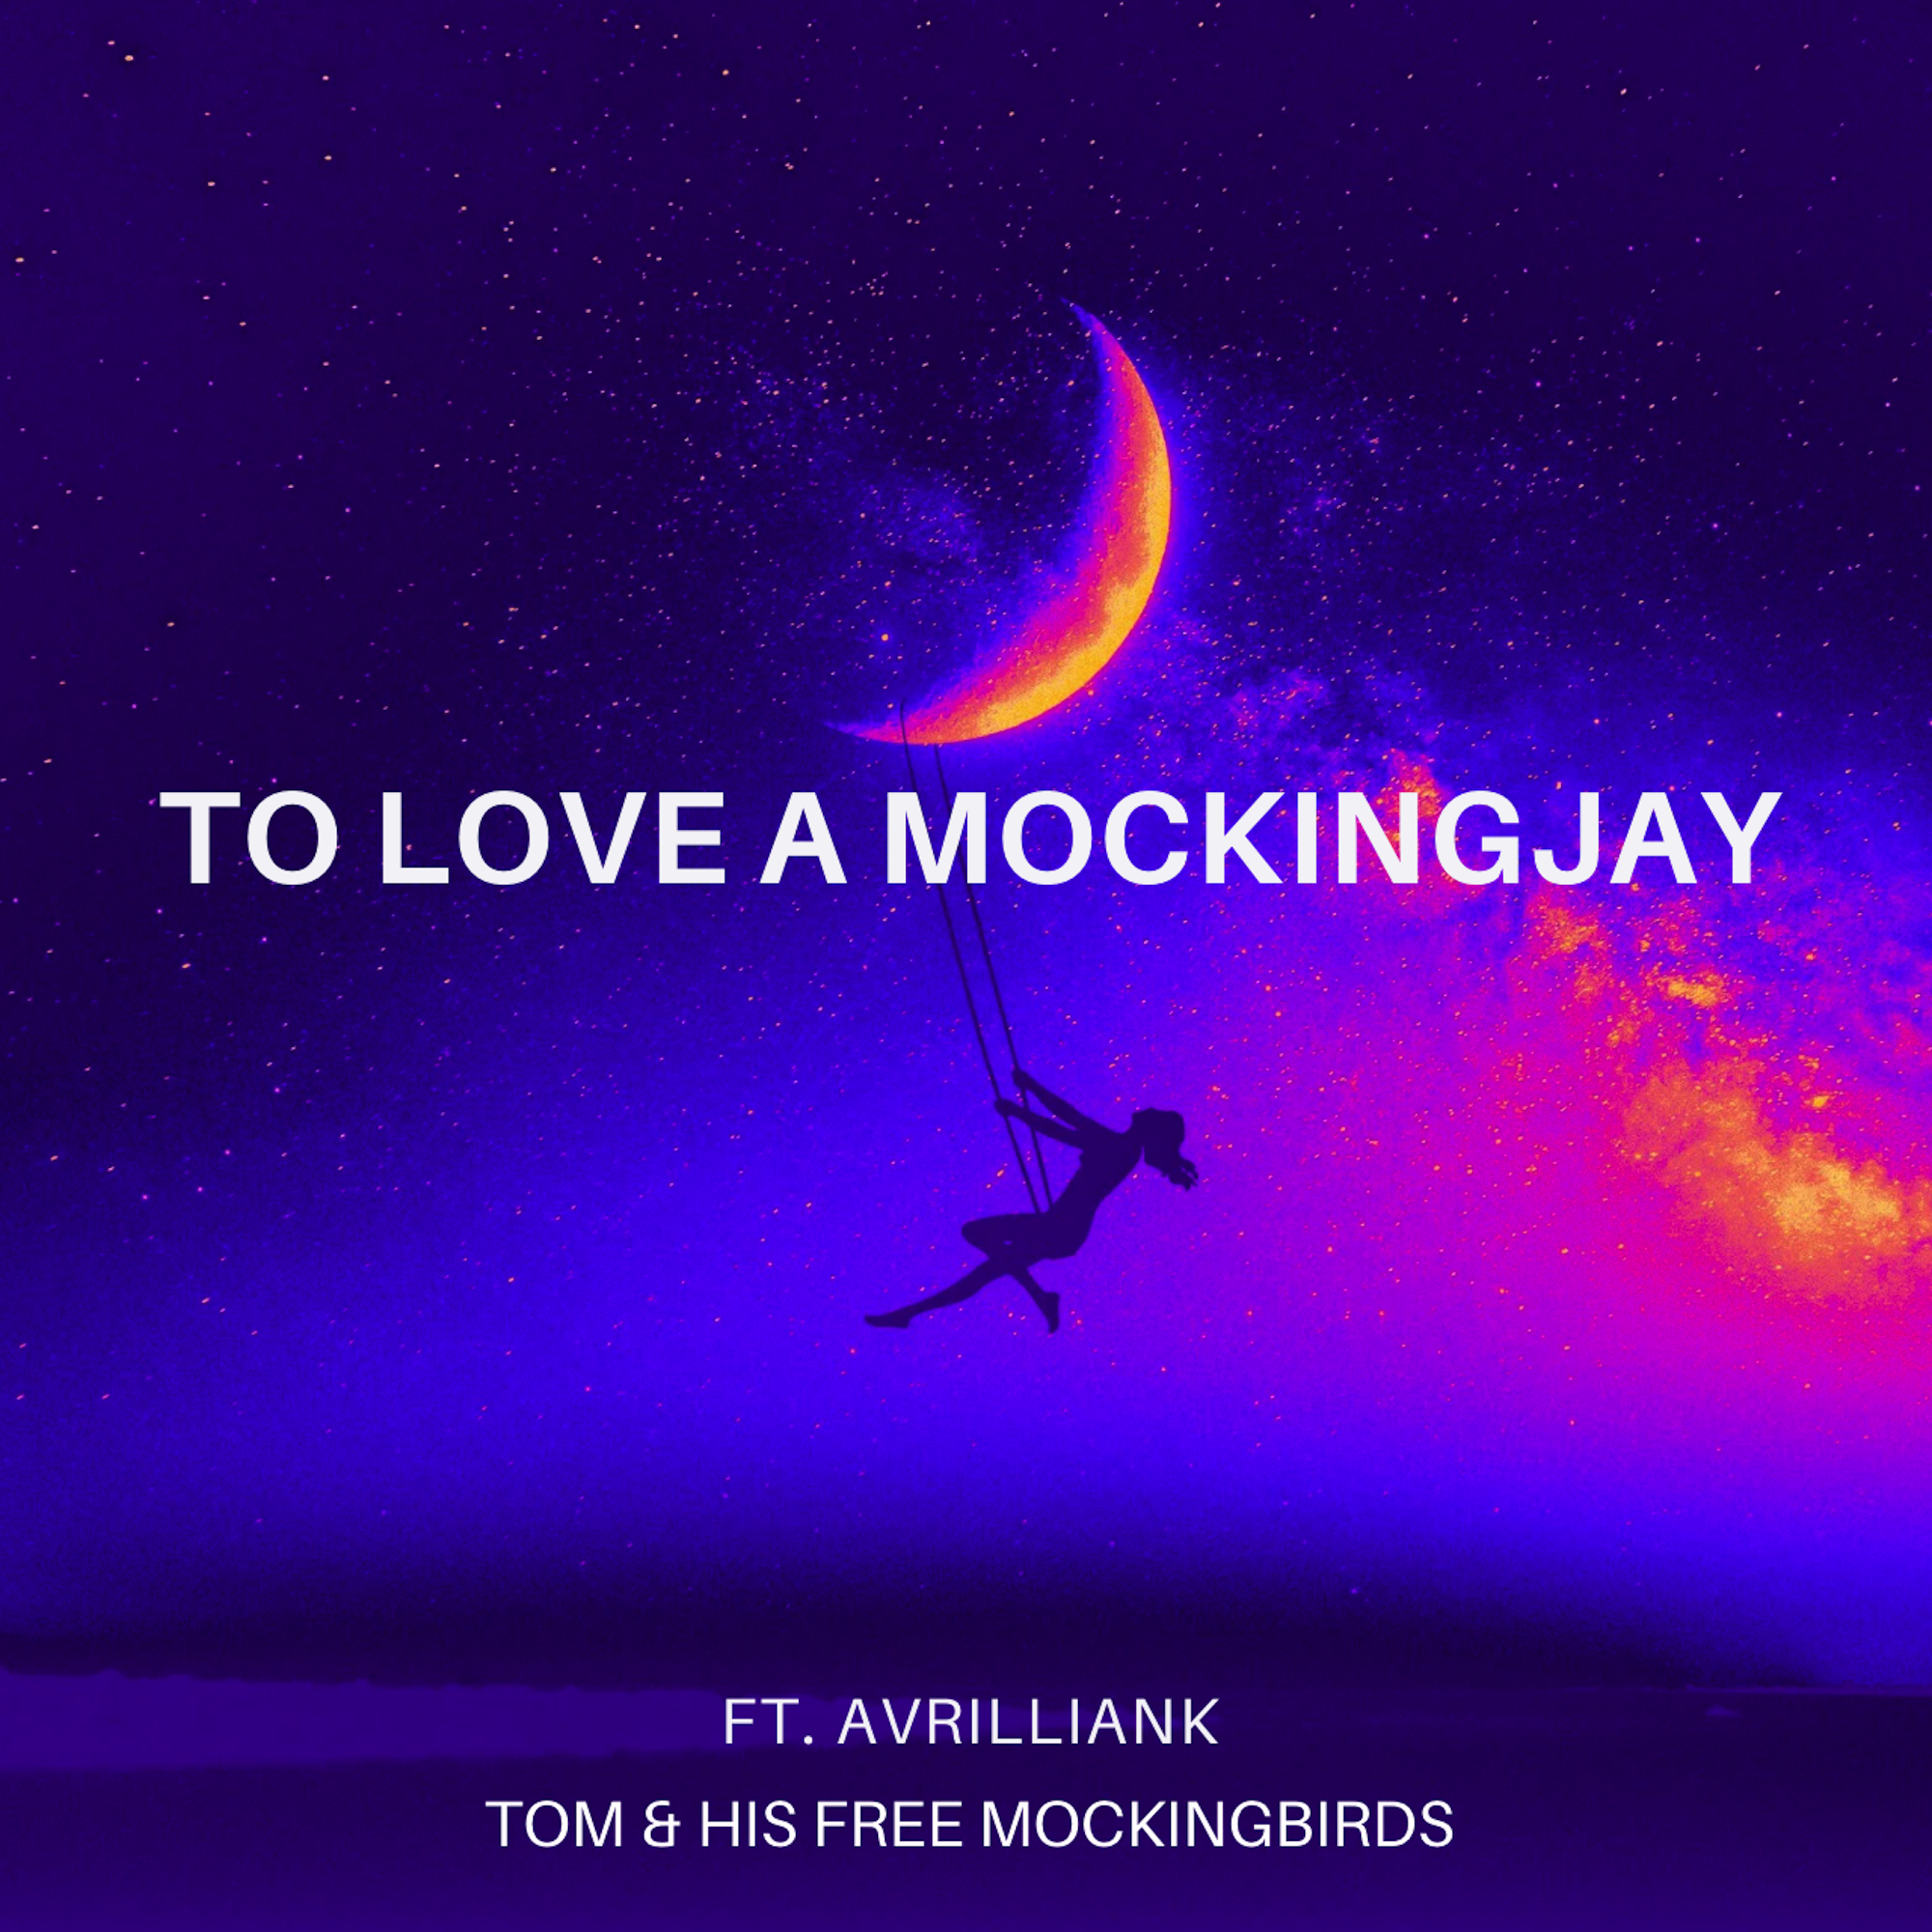 Daily Playlist Alert: ‘To Love A MockingJay’ by Tom & His Free Mockingbirds Now on Bafana FM POWERPLAY